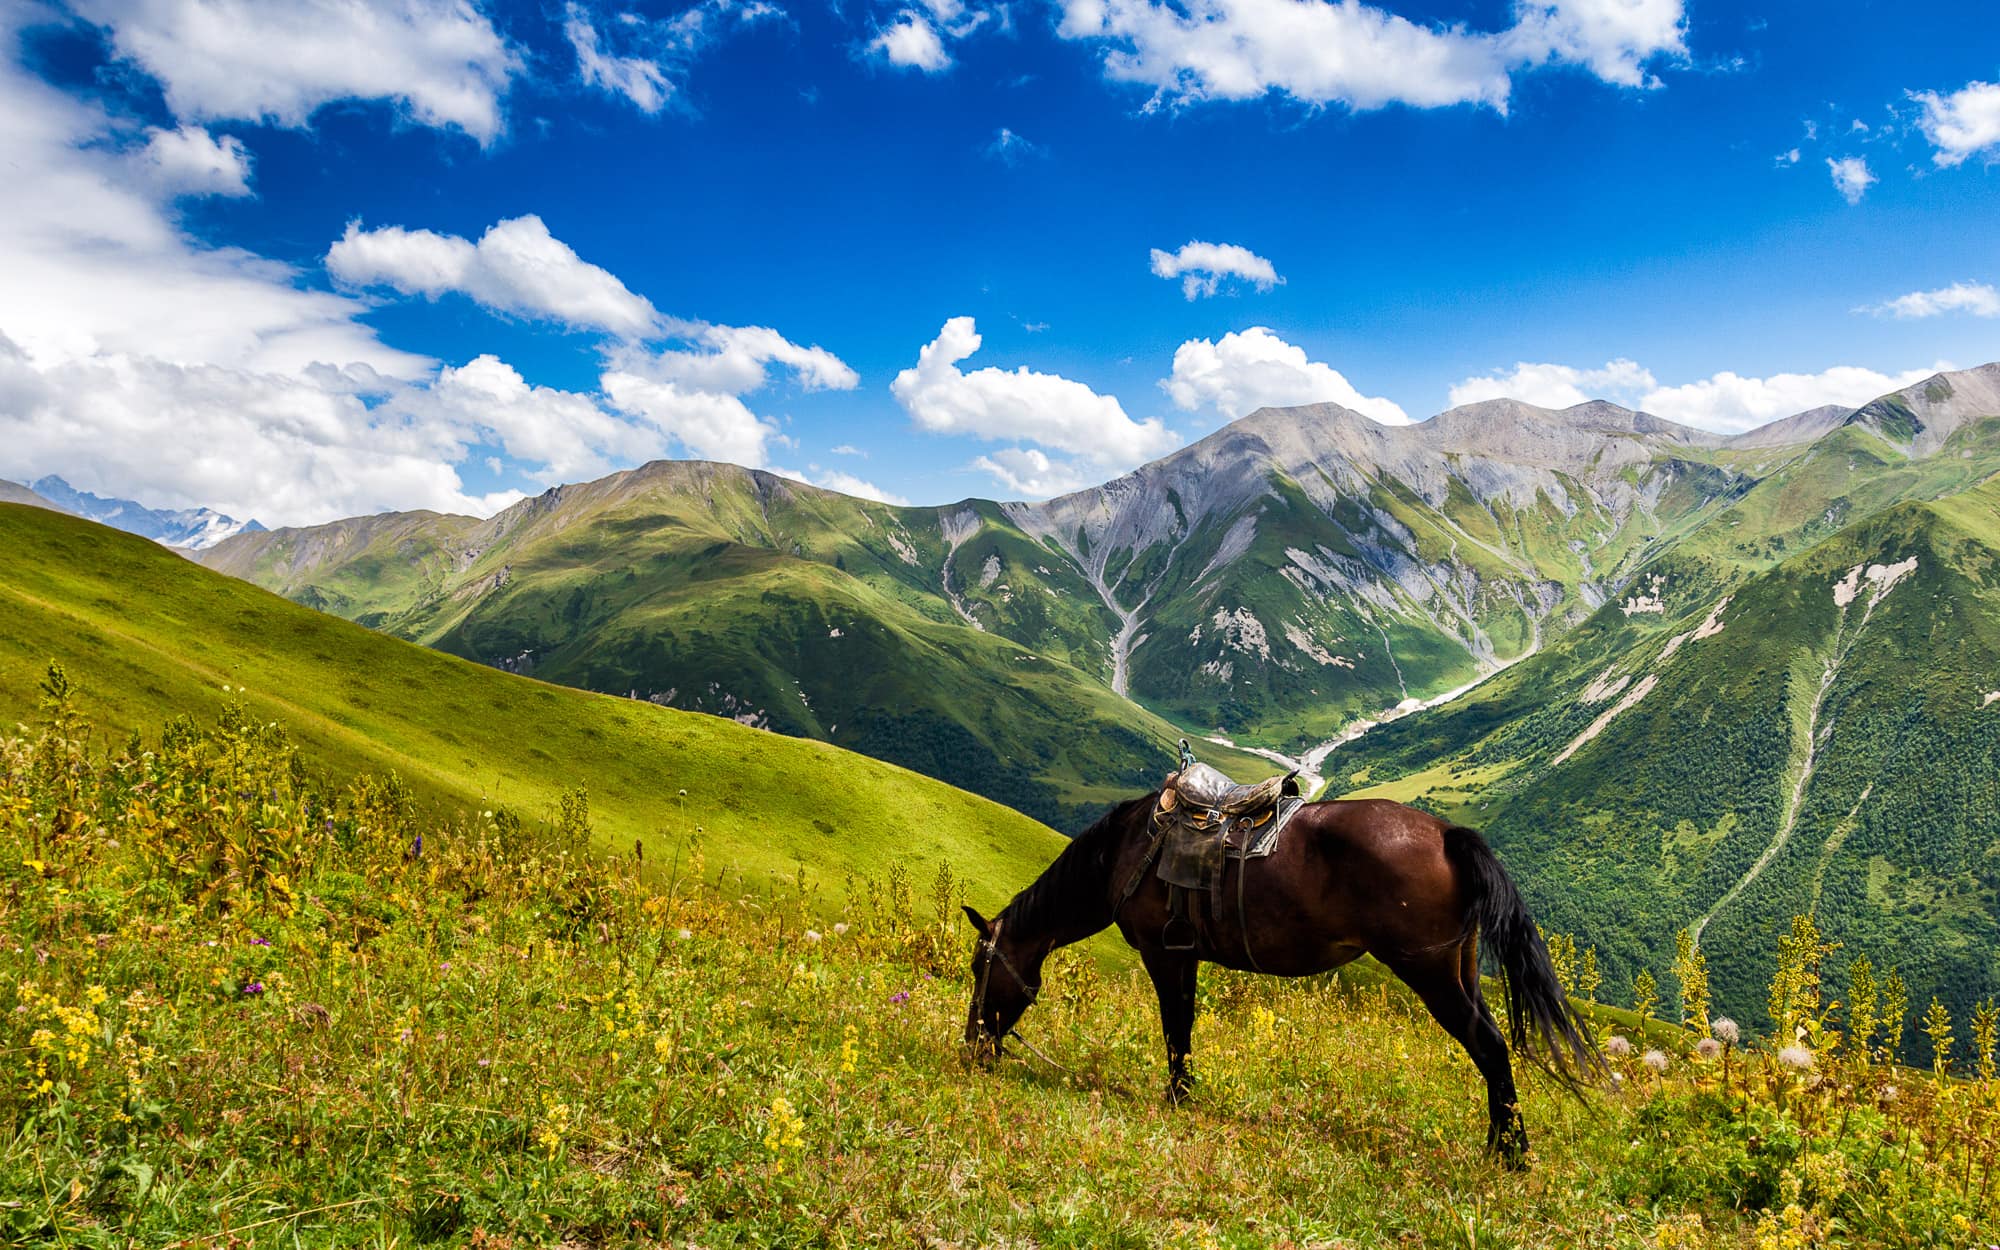 Horse in Caucasus mountains